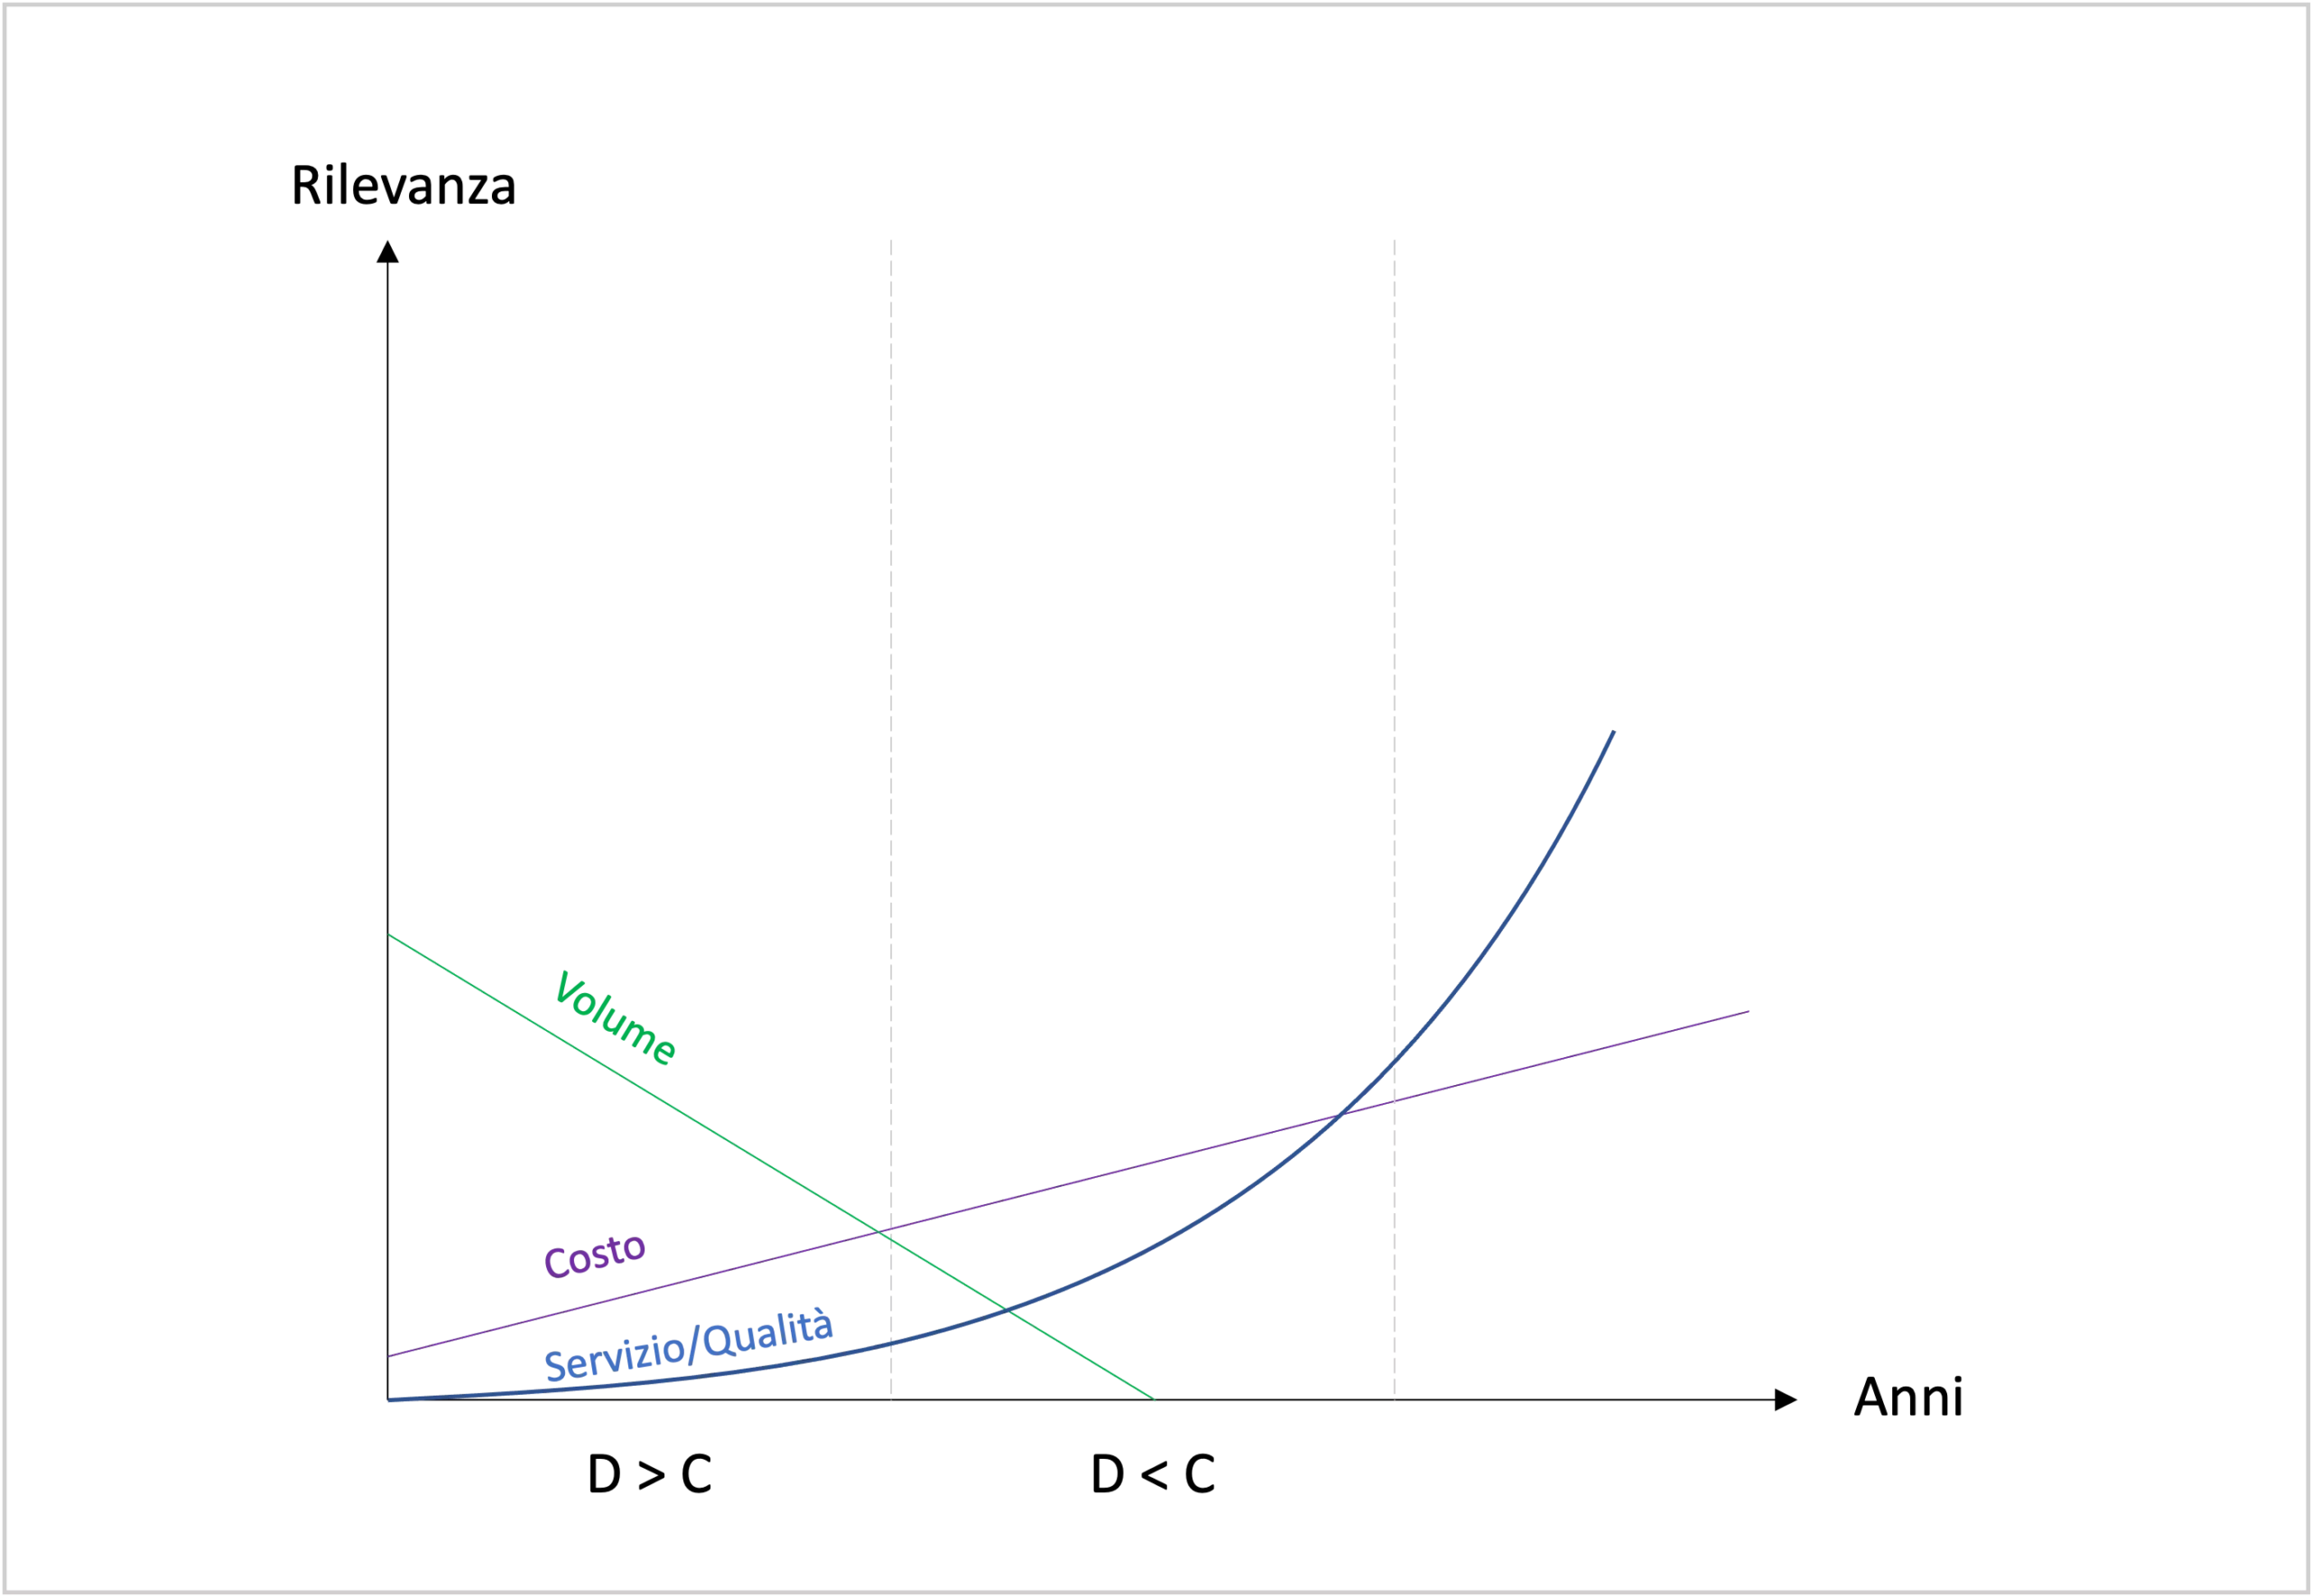 il grafico mostra come nel corso degli anni il fattore di rilevanza tra costo, domanda e servizio/qualità sia cambiato.